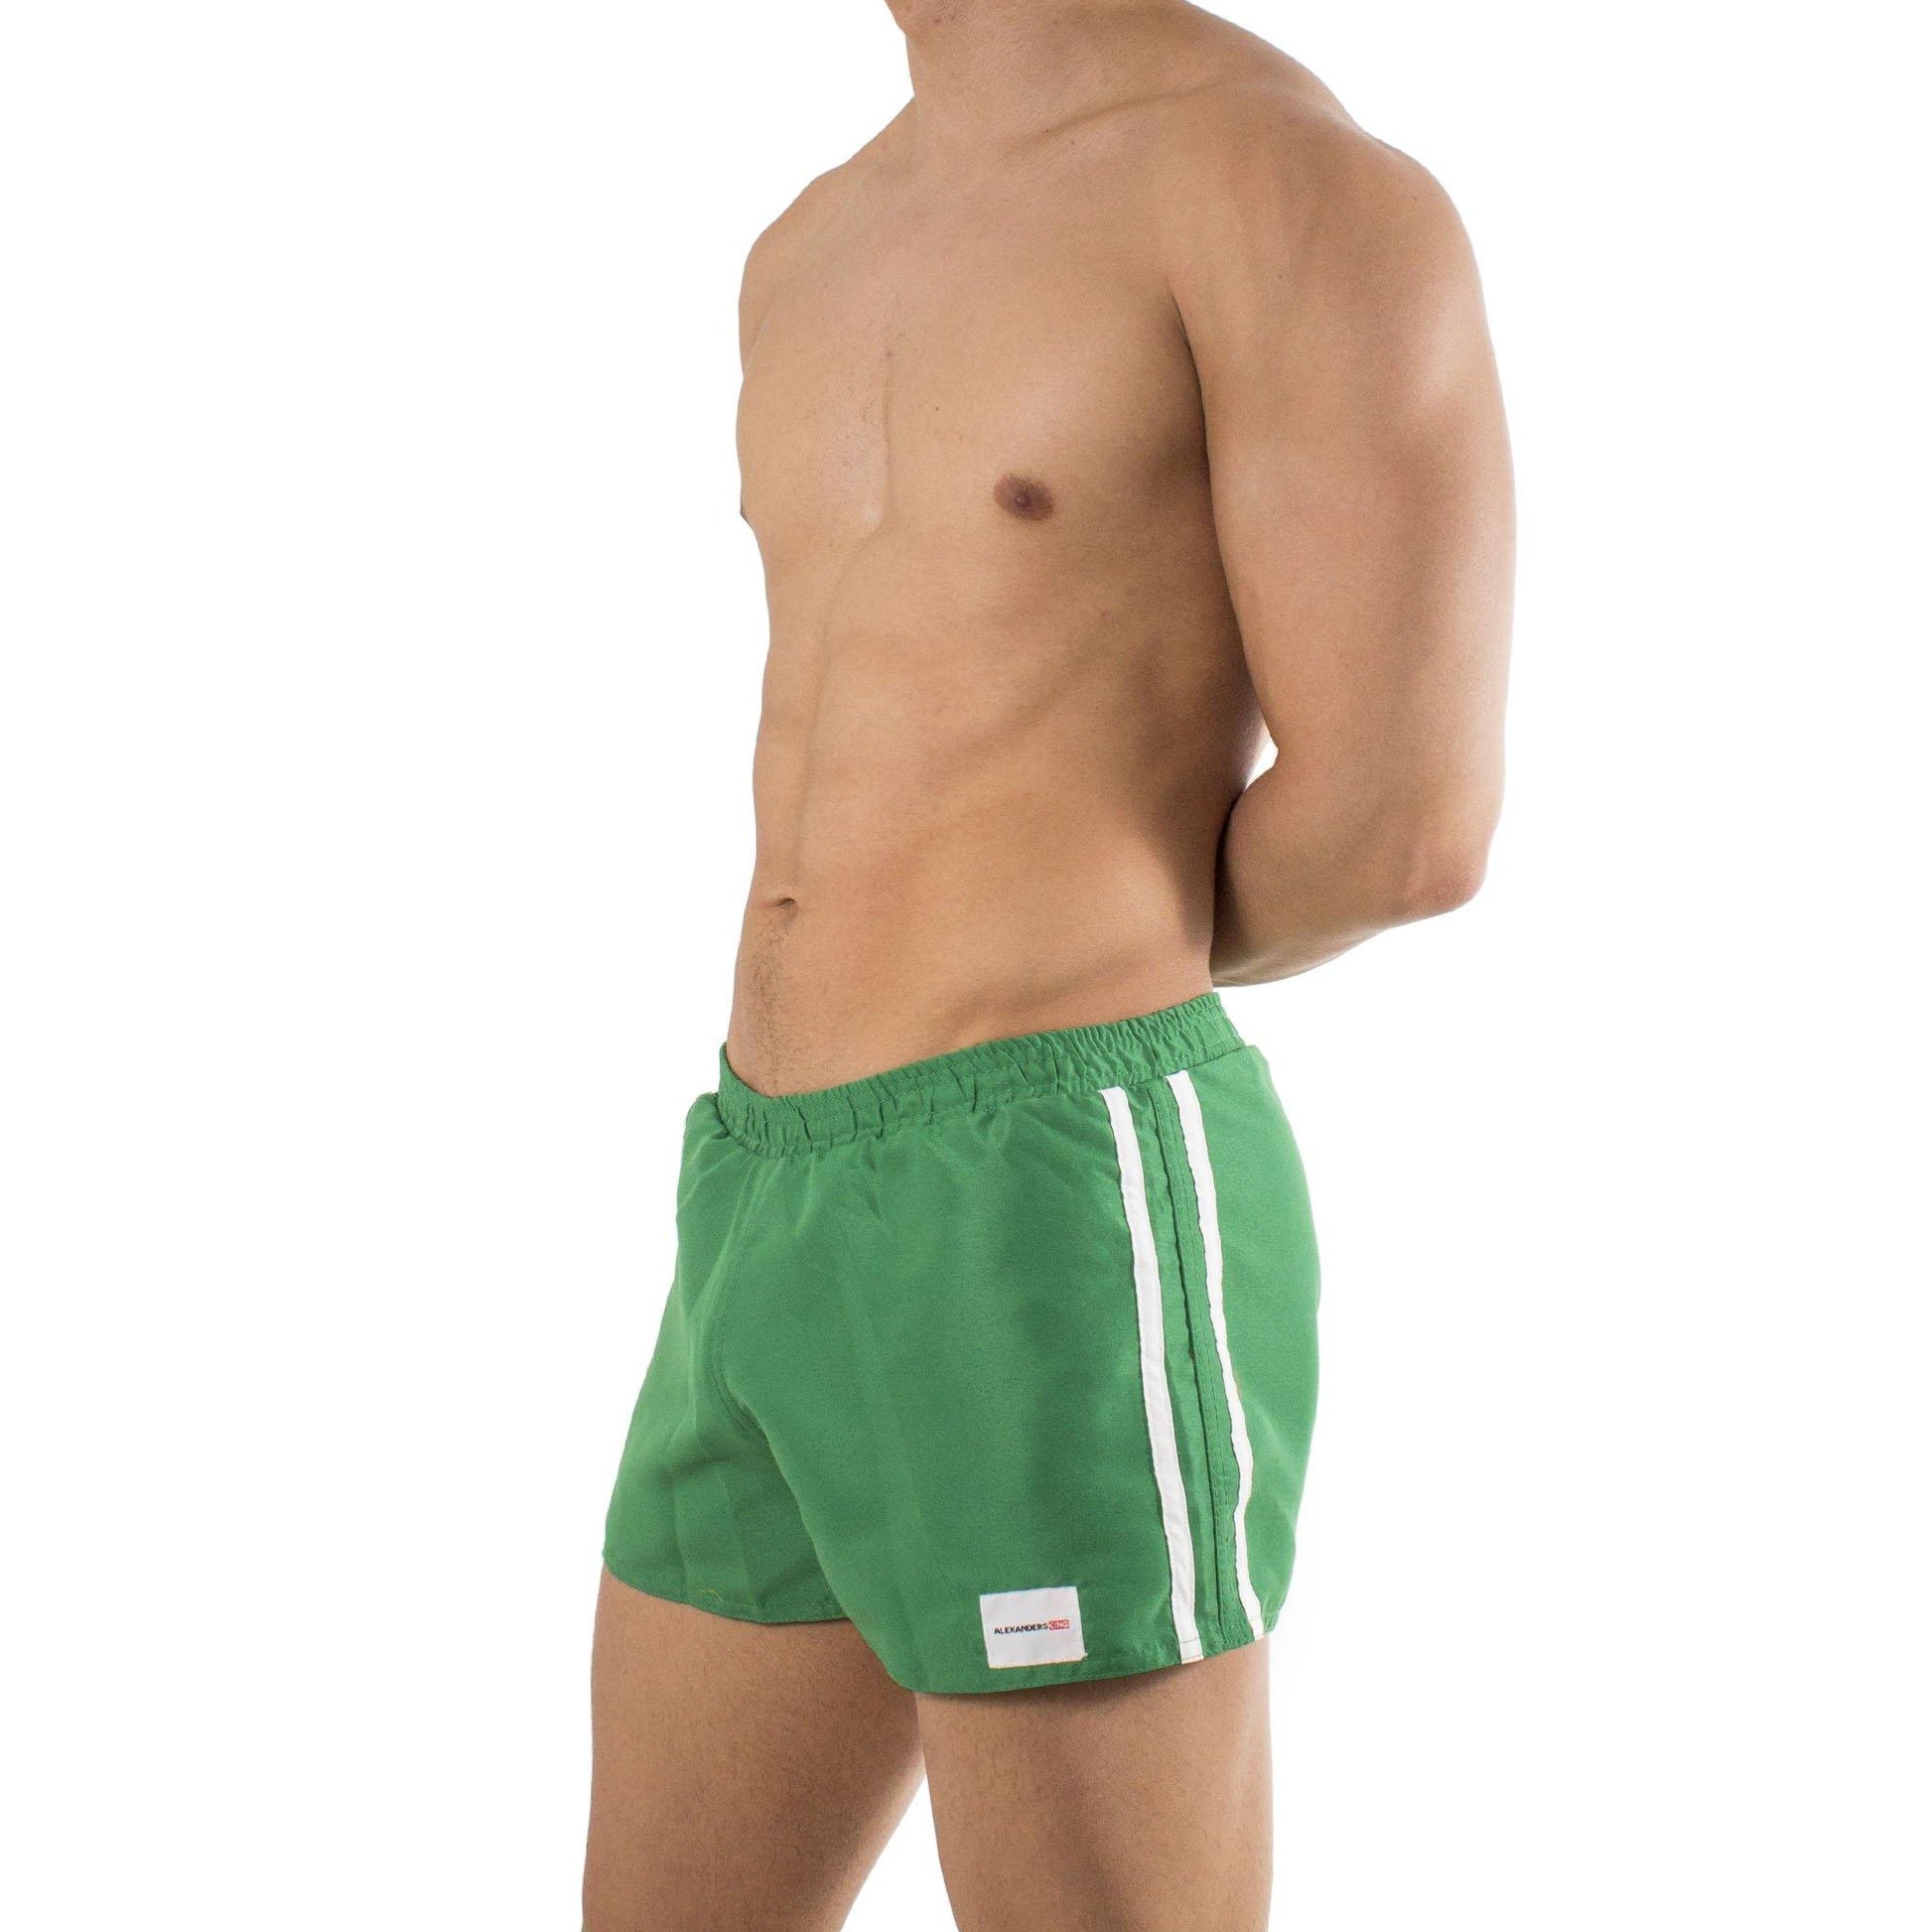 TS0009 - Traje de Baño Short Verde/Blanco - AlexandersKing Underwear